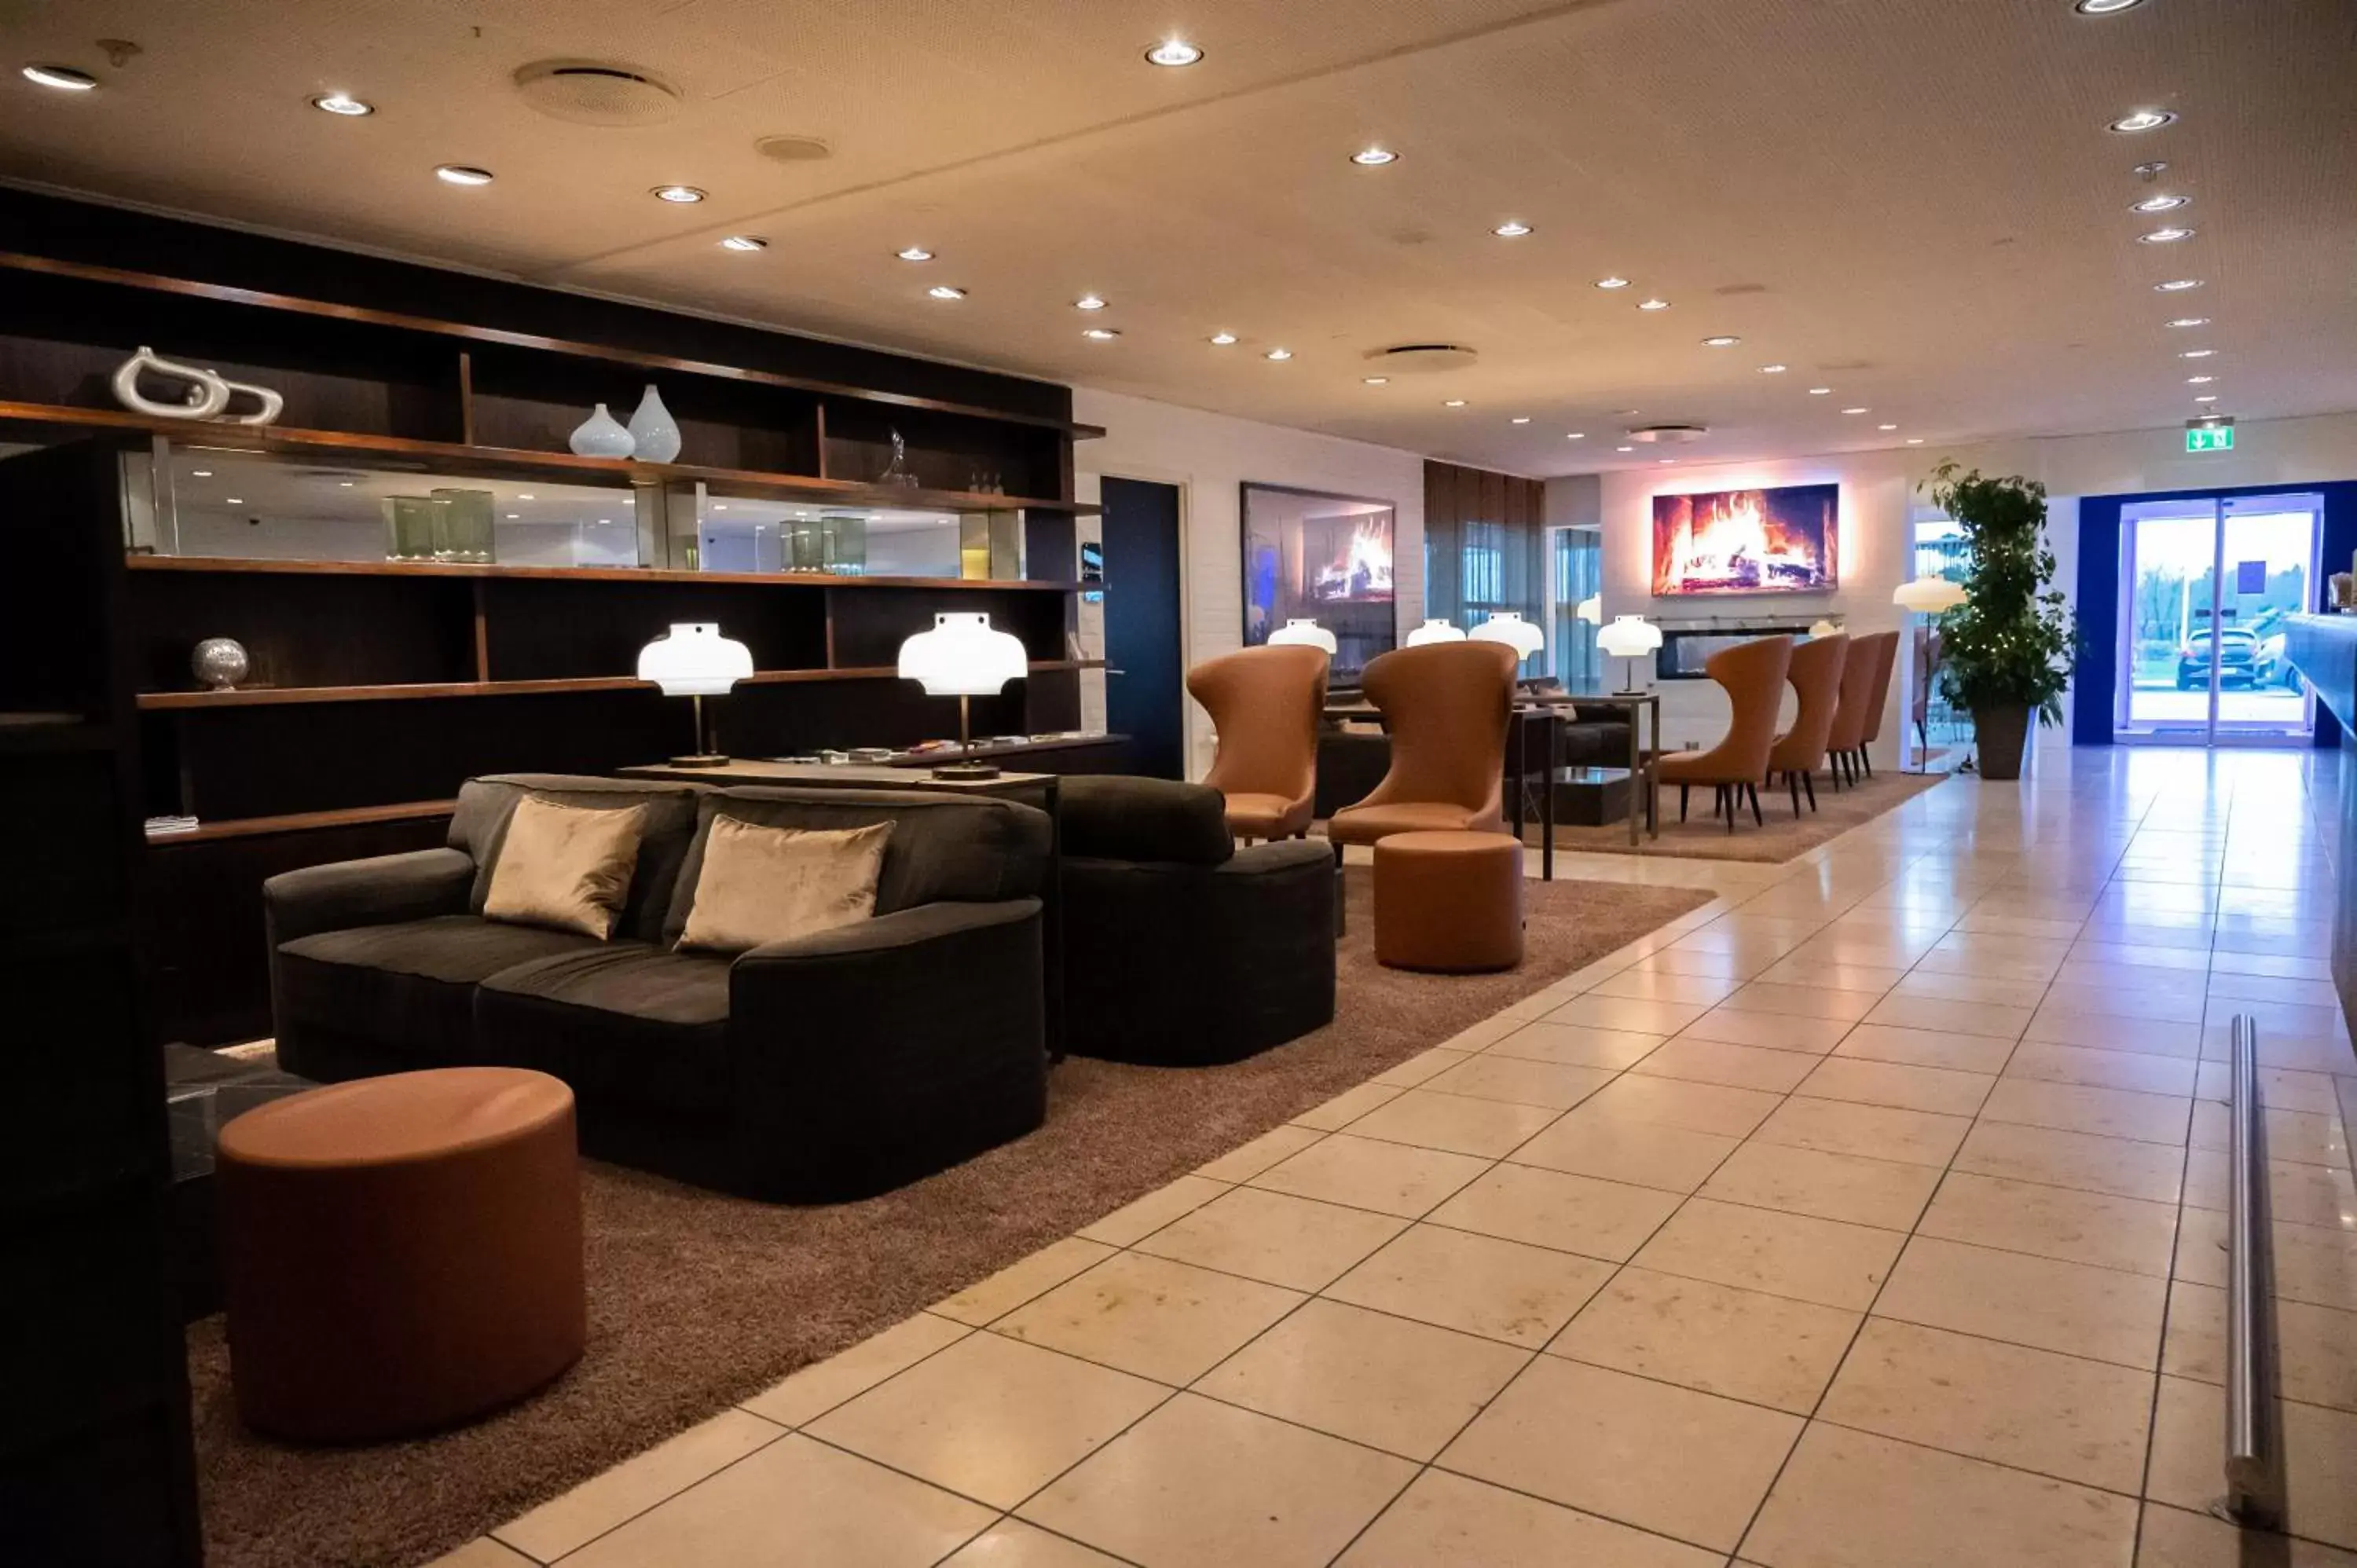 Lobby or reception in Hotel Svanen Billund